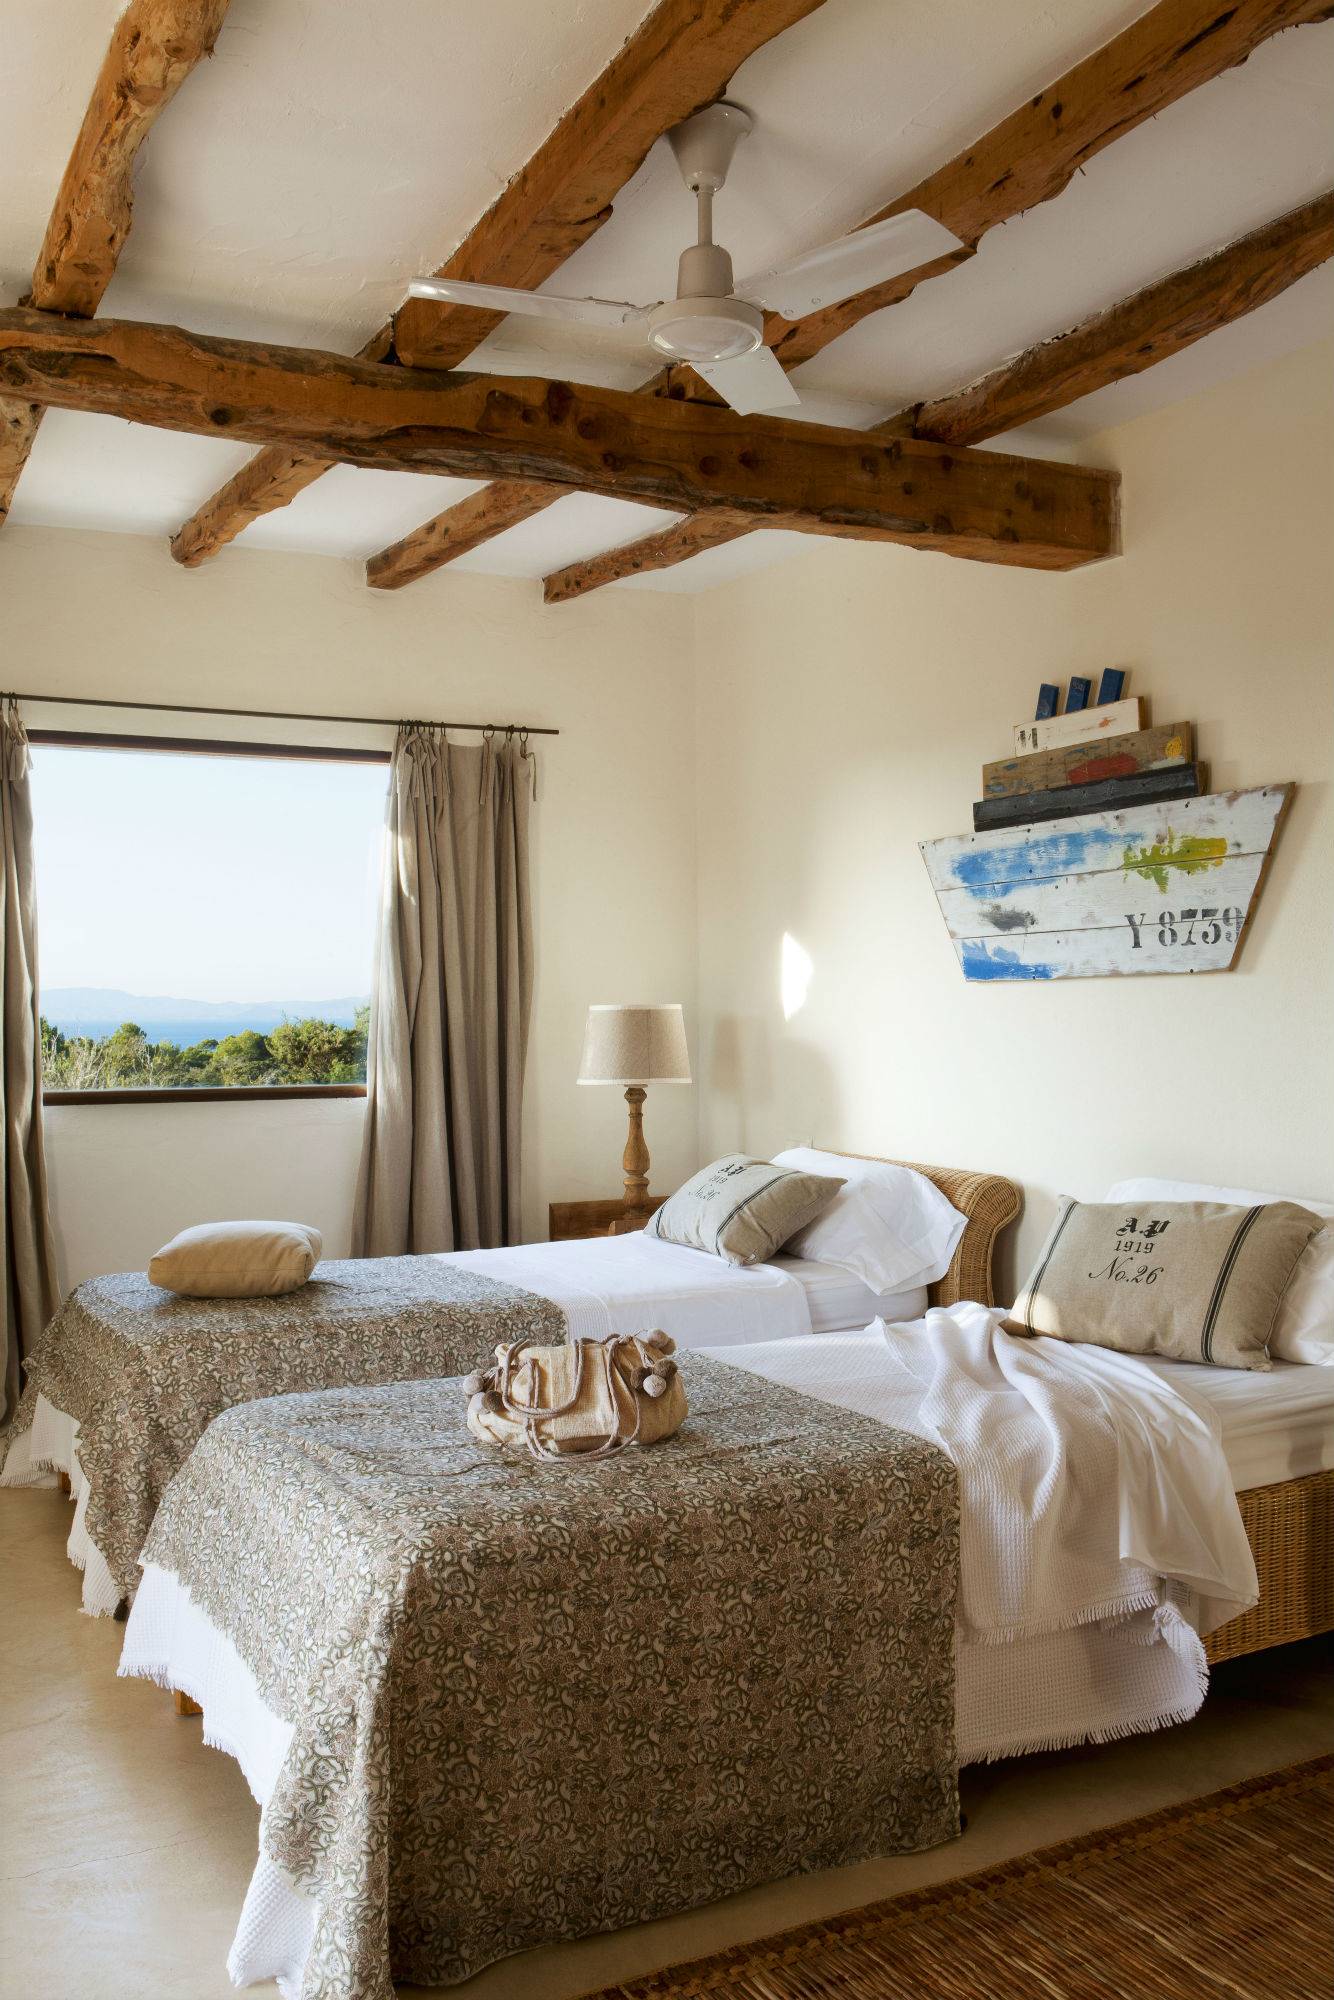 Dormitorio veraniego con muebles y textiles en marrón que crean la sintonía perfecta.